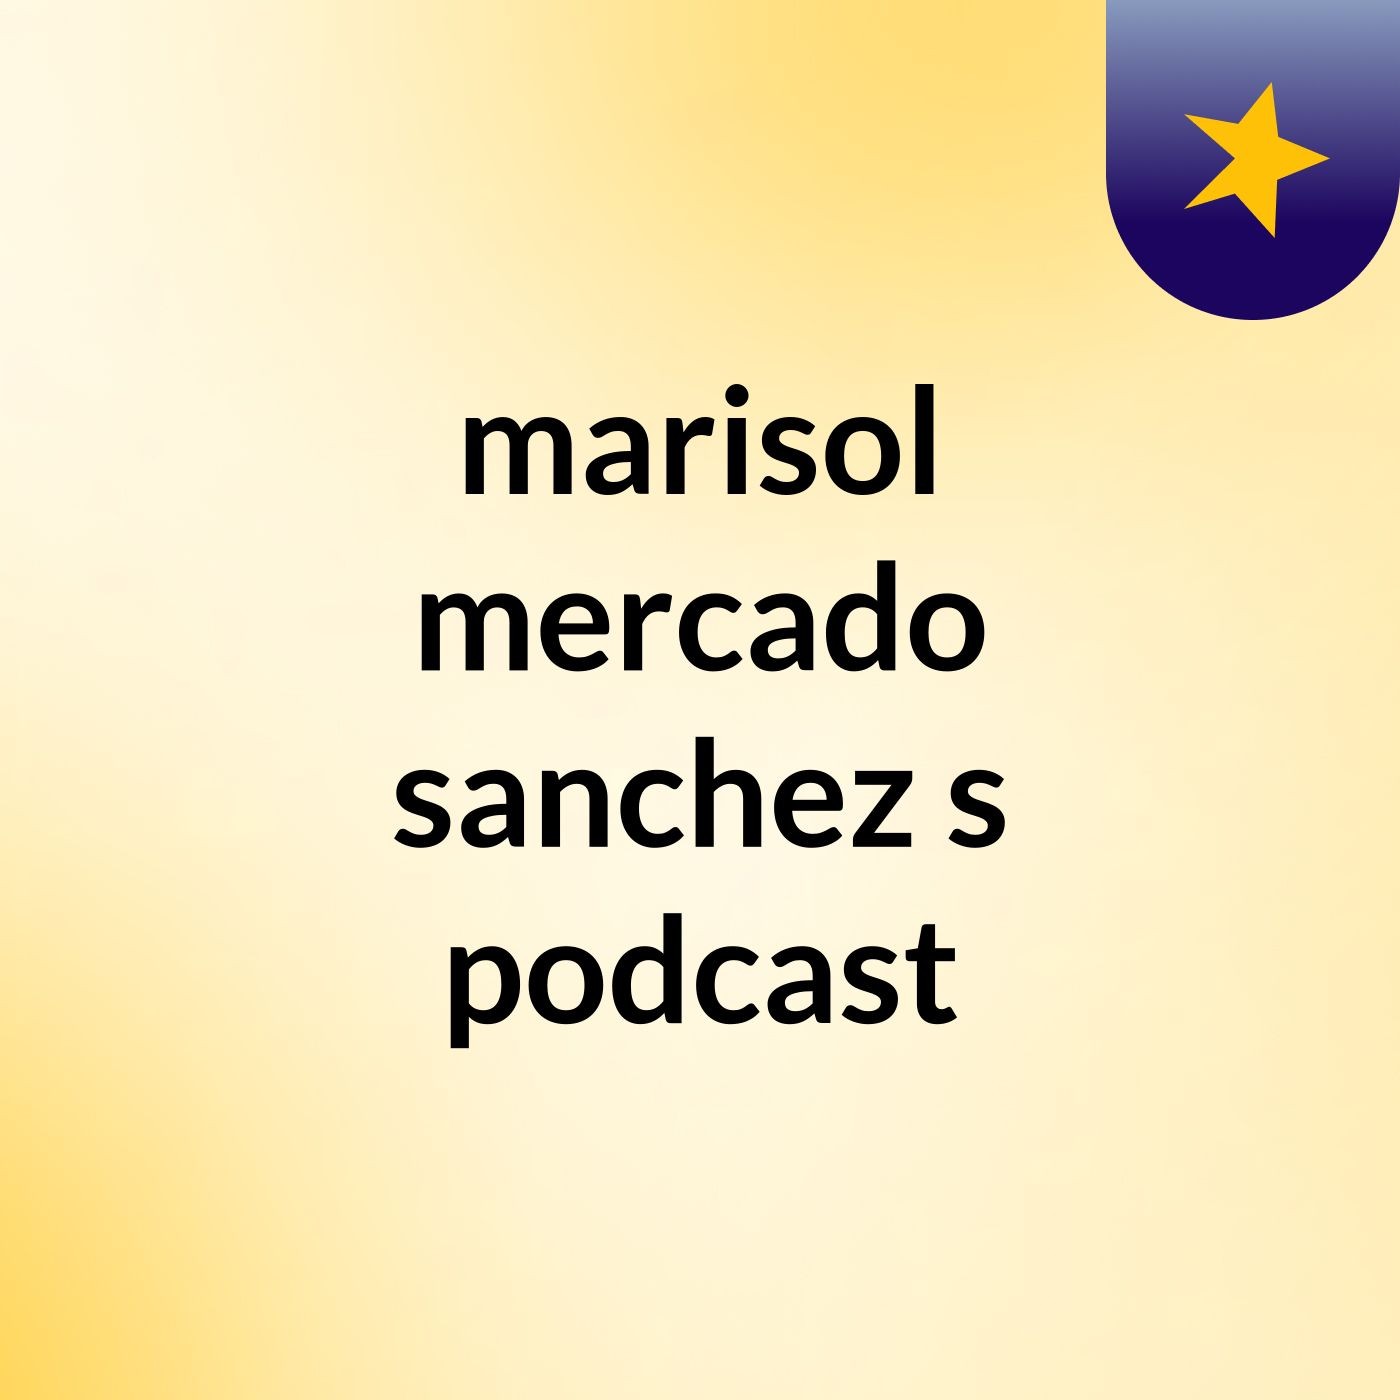 marisol mercado sanchez's podcast